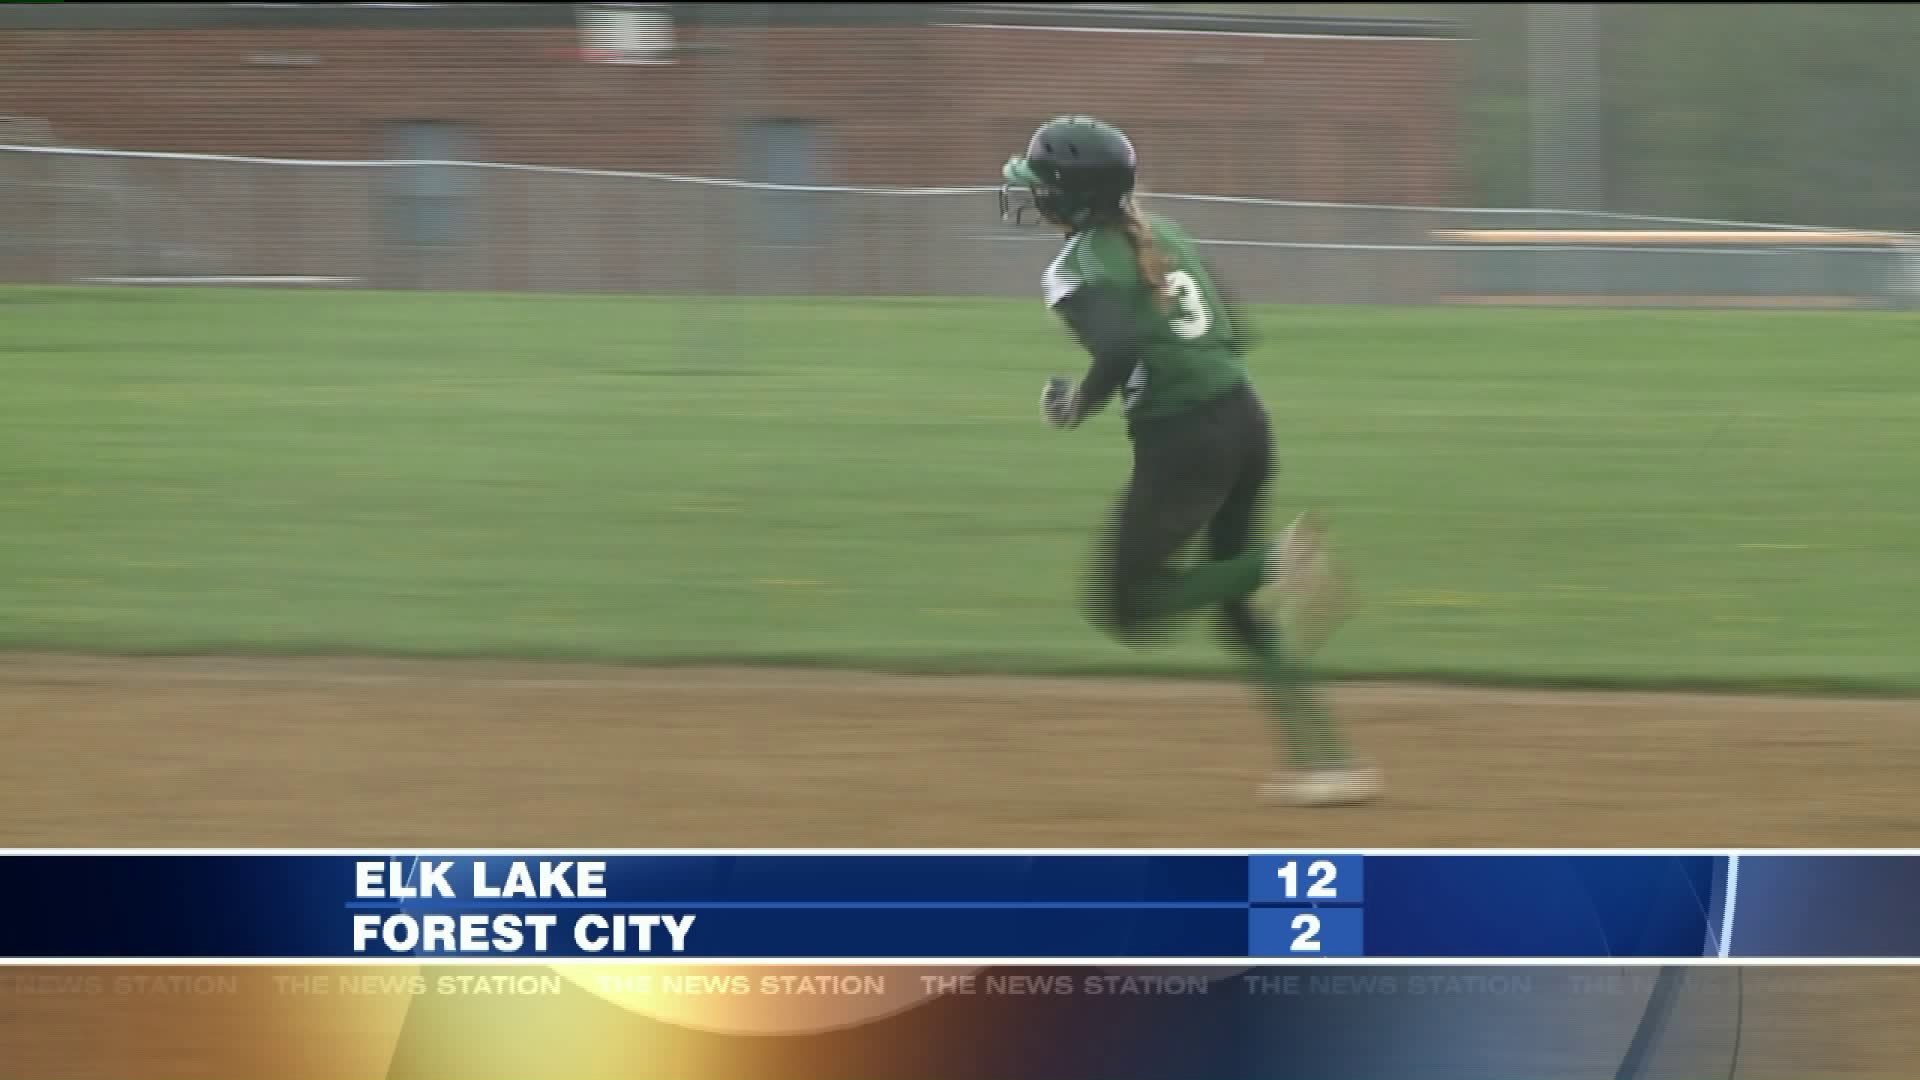 Elk Lake vs Forest City softball